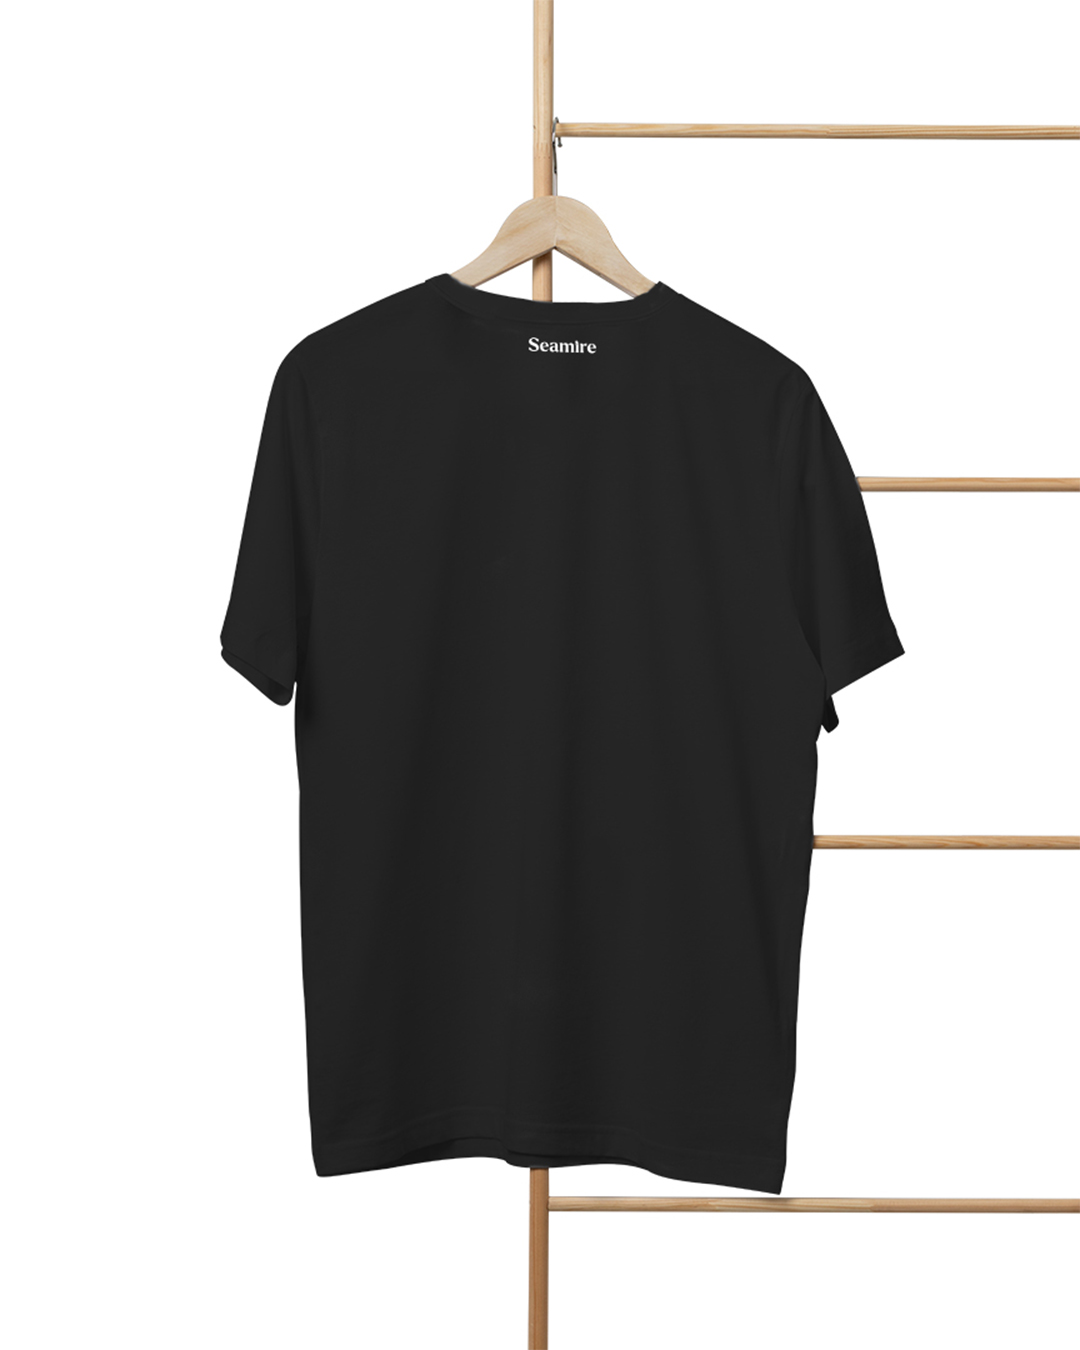 Seamire men t-shirt